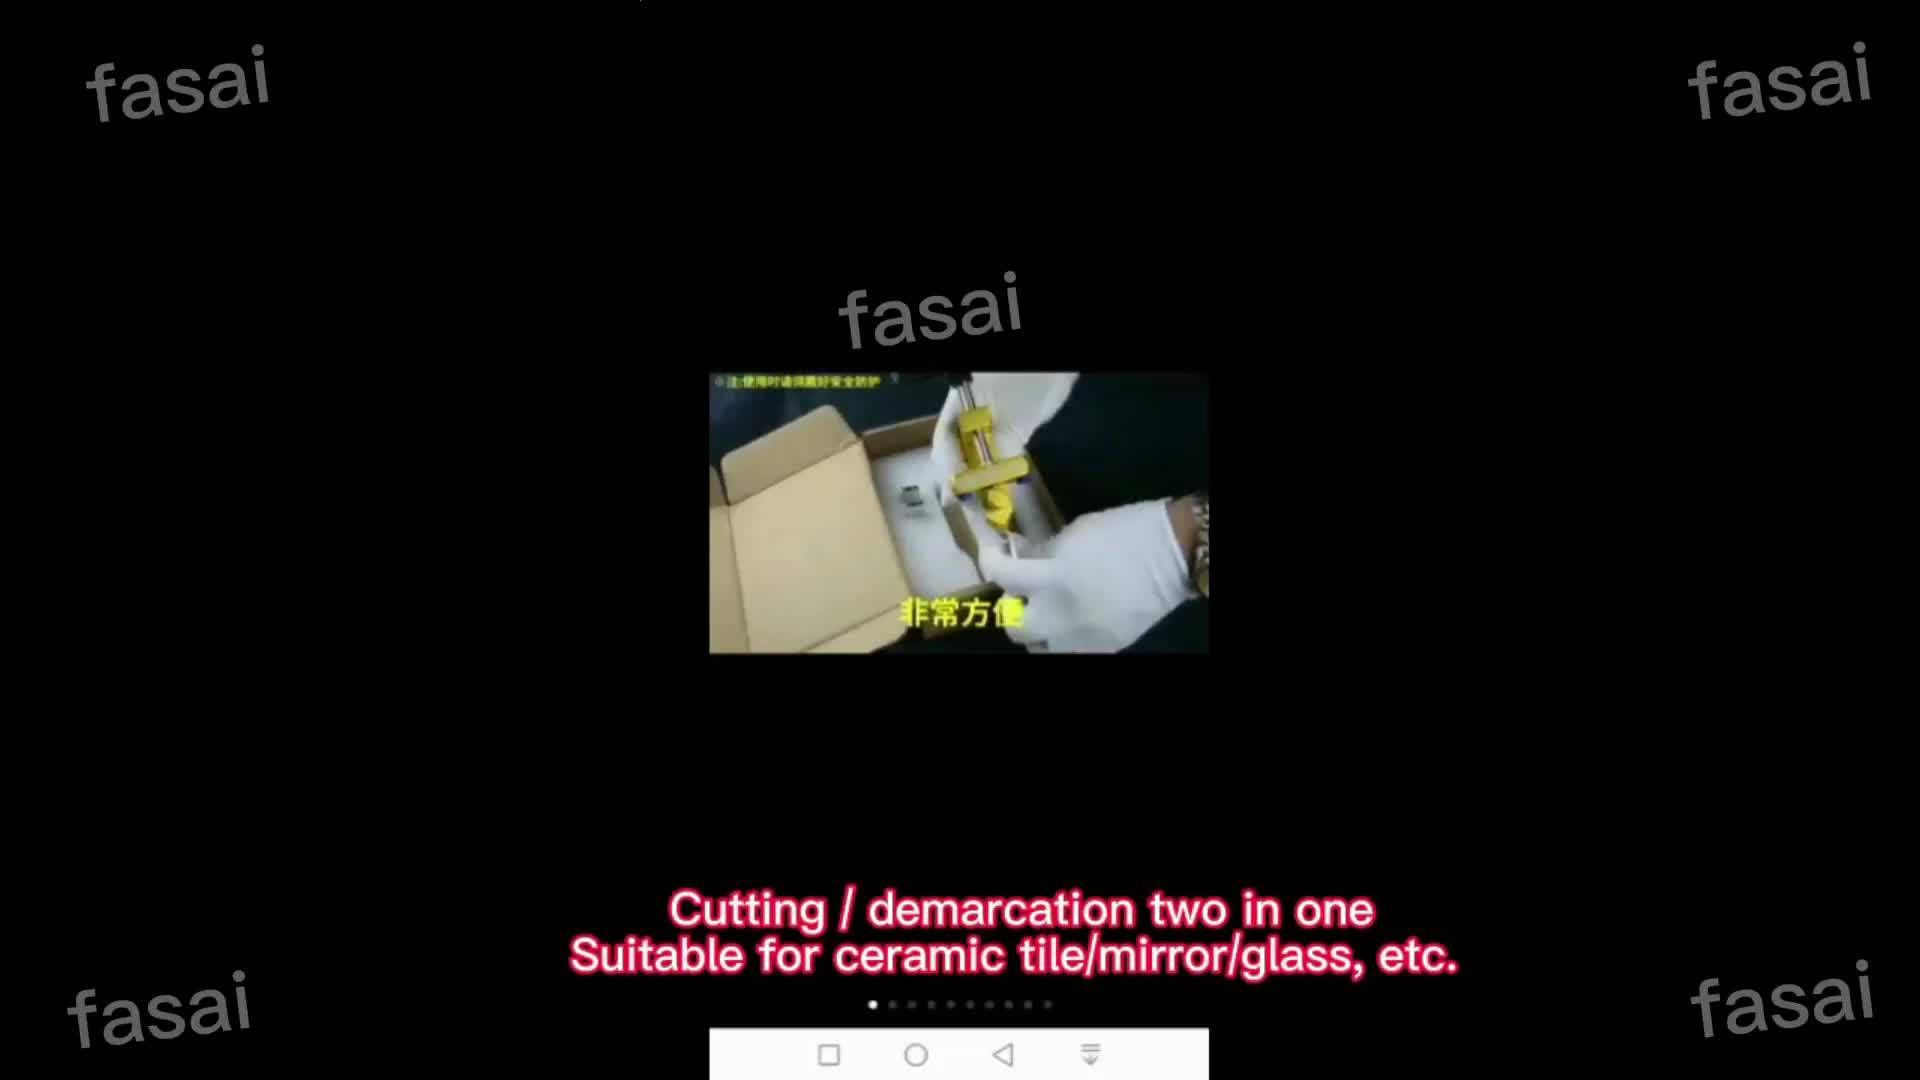 จัดส่ง-24-ชม-2in1-เครื่องตัดกระจก-เครื่องตัดกระเบื่อง-เหมาะสำหรับตัดเซรามิก-แก้ว-และวัสดุอื่นๆ-glass-cutter